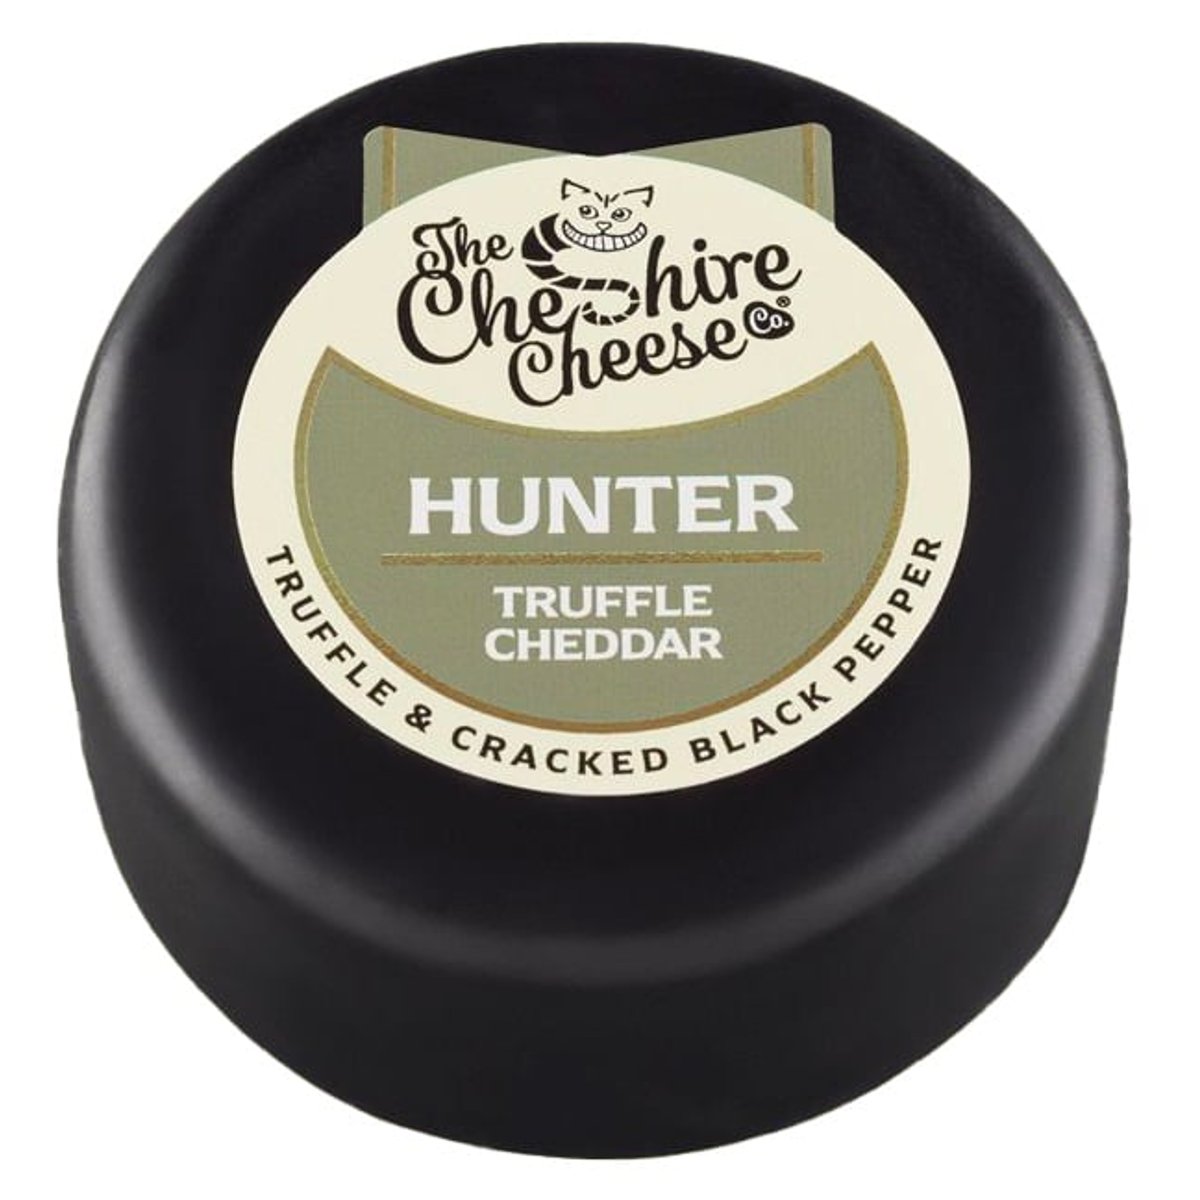 Cheshire cheese Hunter cheddar lanýž a pepř minibochník